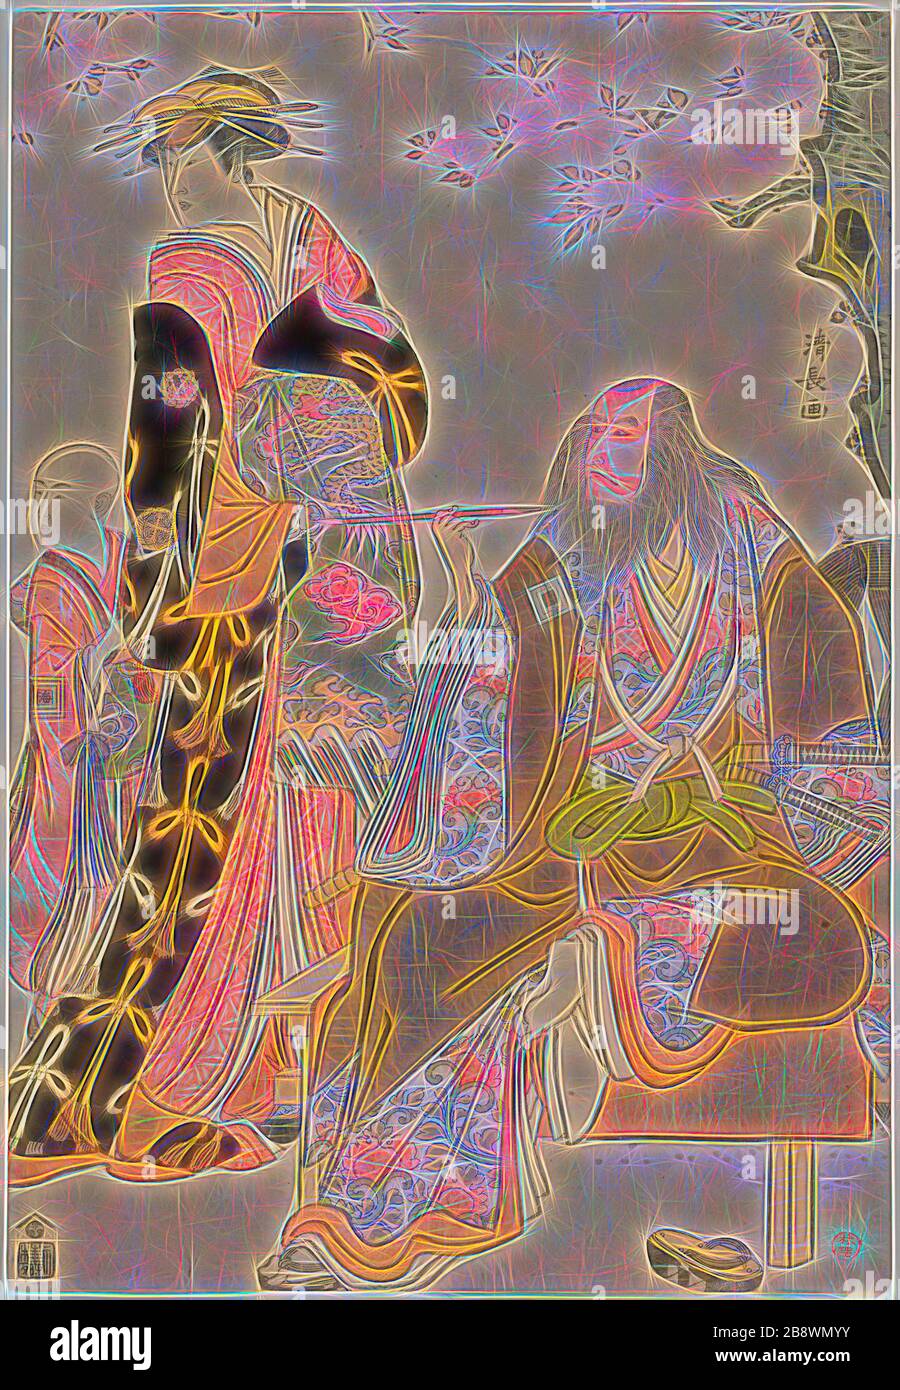 Die Schauspieler Ichikawa Danjuro V als Hige no Ikyu, Nakamura Riko als Agemaki und Ichikawa Ebizo als Agemakis Begleiter in dem Stück Sukeroku Yukari no Edozakura im Nakamura Theater im dritten Monat, um die Jahre 1732-1815, um den Block von Japan, um den rechten Block von Odiphii Kiyonaga, Japanisch, 1752-1815, drucken. 35,4 x 24,4 cm (rechtes Blatt), von Gibon neu vorgestellt, Design von warmfröhlichem Leuchten von Helligkeit und Lichtstrahlen. Klassische Kunst mit moderner Note neu erfunden. Fotografie, inspiriert vom Futurismus, die dynamische Energie moderner Technologie, Bewegung, Geschwindigkeit und Kultur revolutionieren. Stockfoto